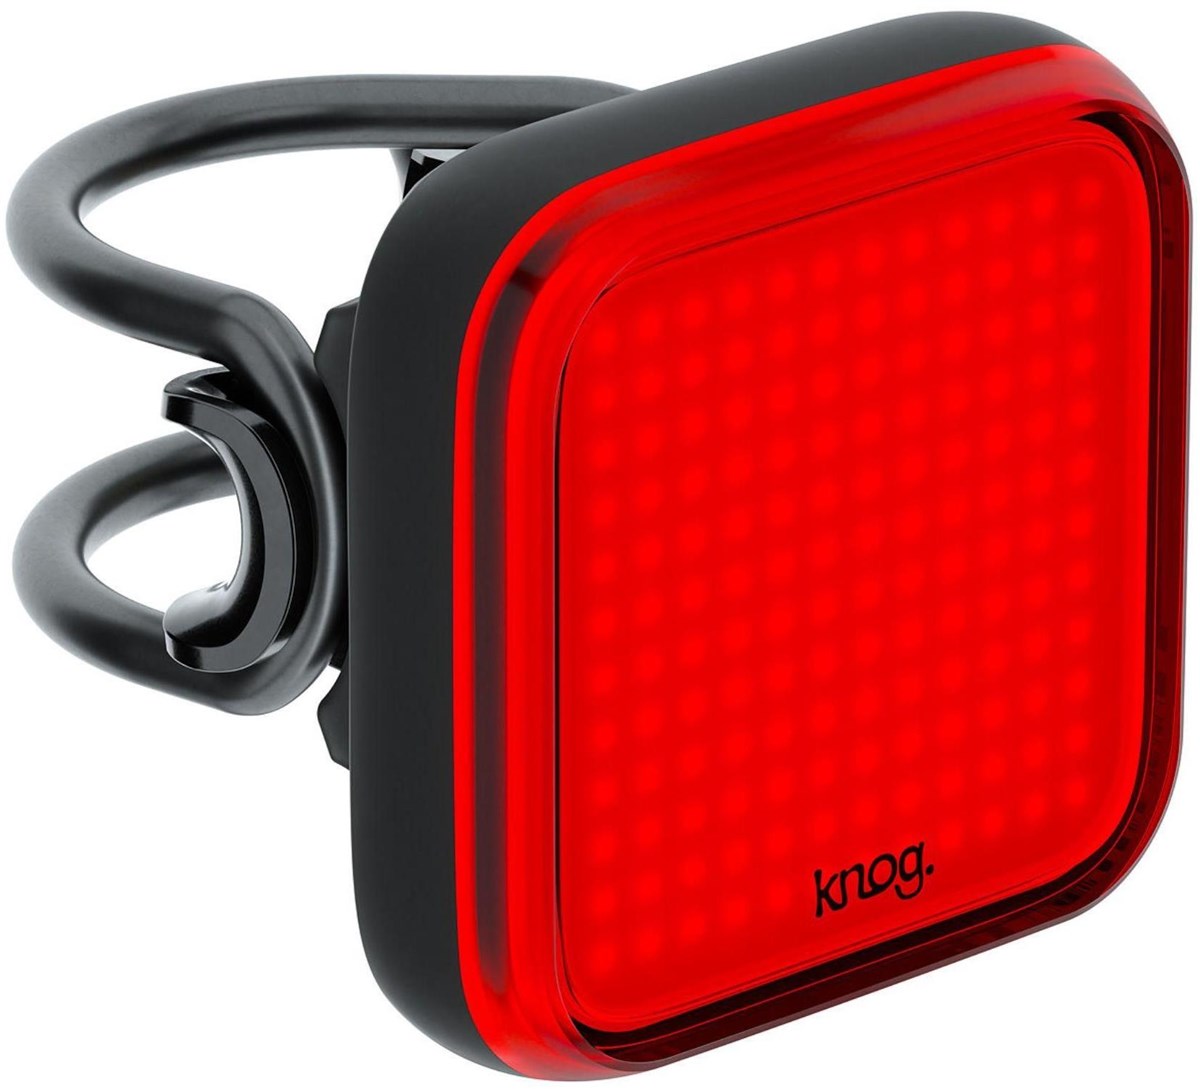 Knog Blinder Square USB Rechargeable Rear Light image #3